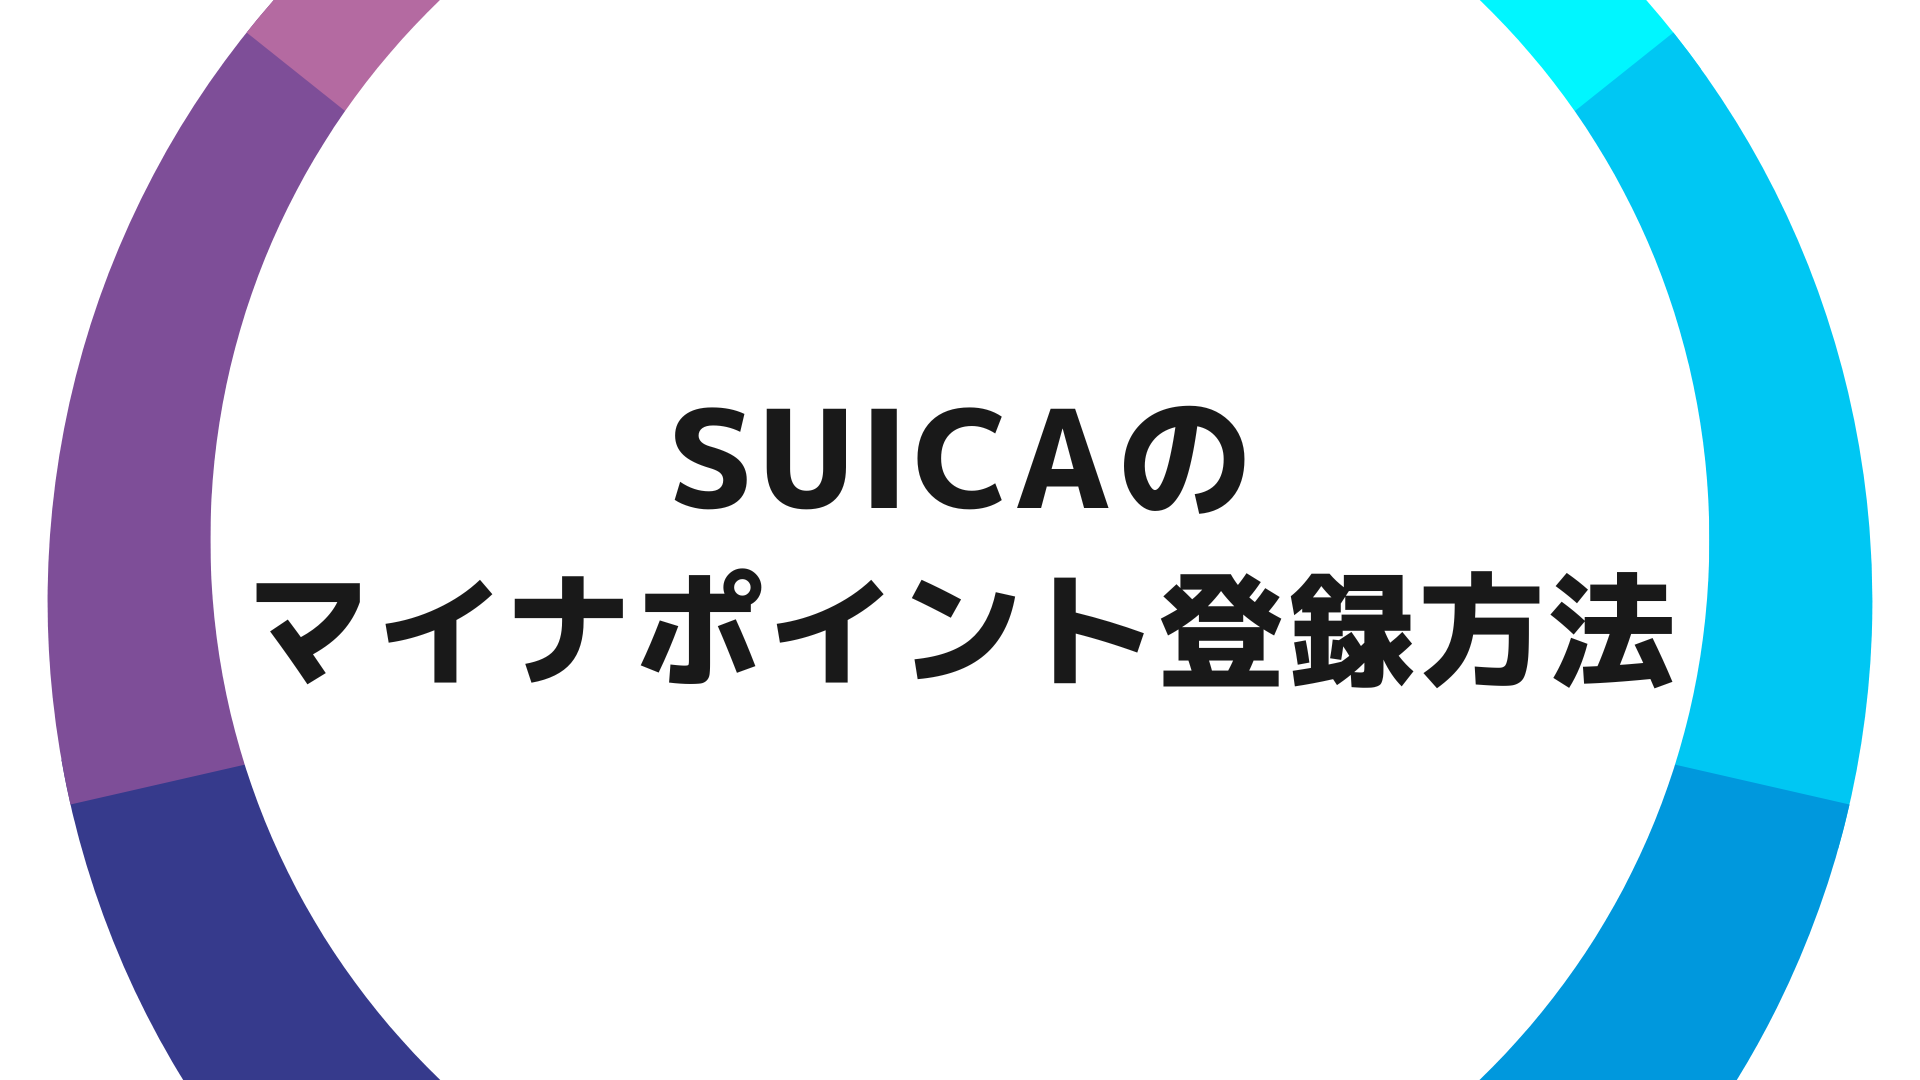 Suicaでマイナポイントを登録する方法【使い方とキャンペーンを解説】